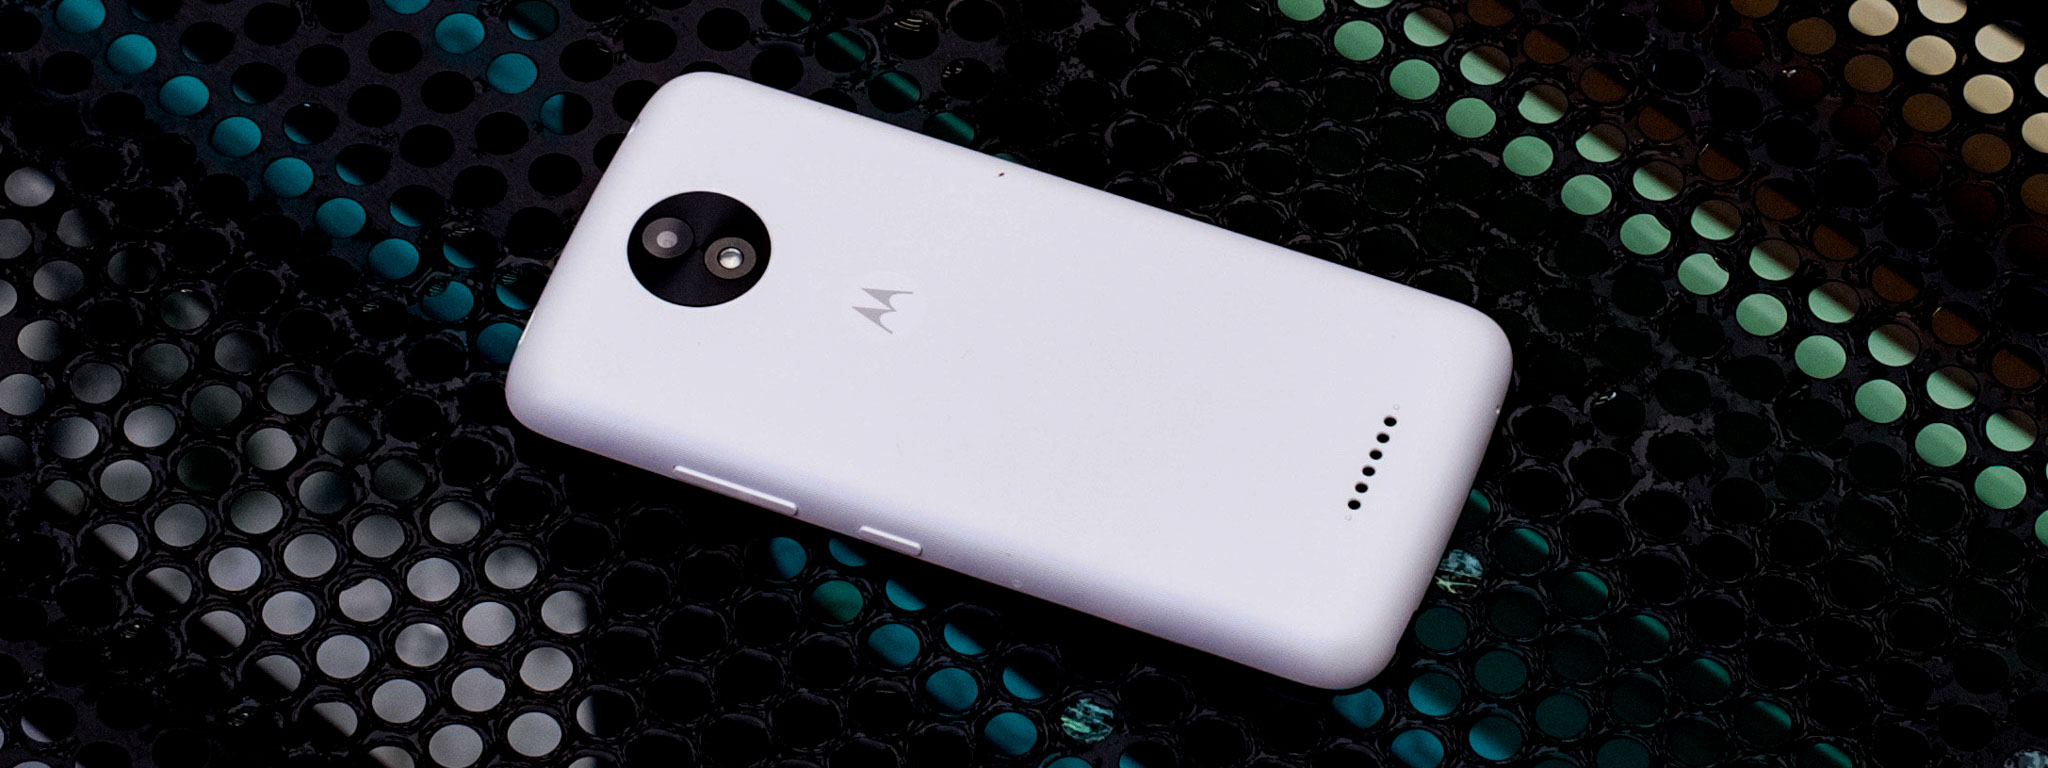 Trên tay Moto C Plus giá 3 triệu: pin 4000mAh, Android 7, camera selfie có flash